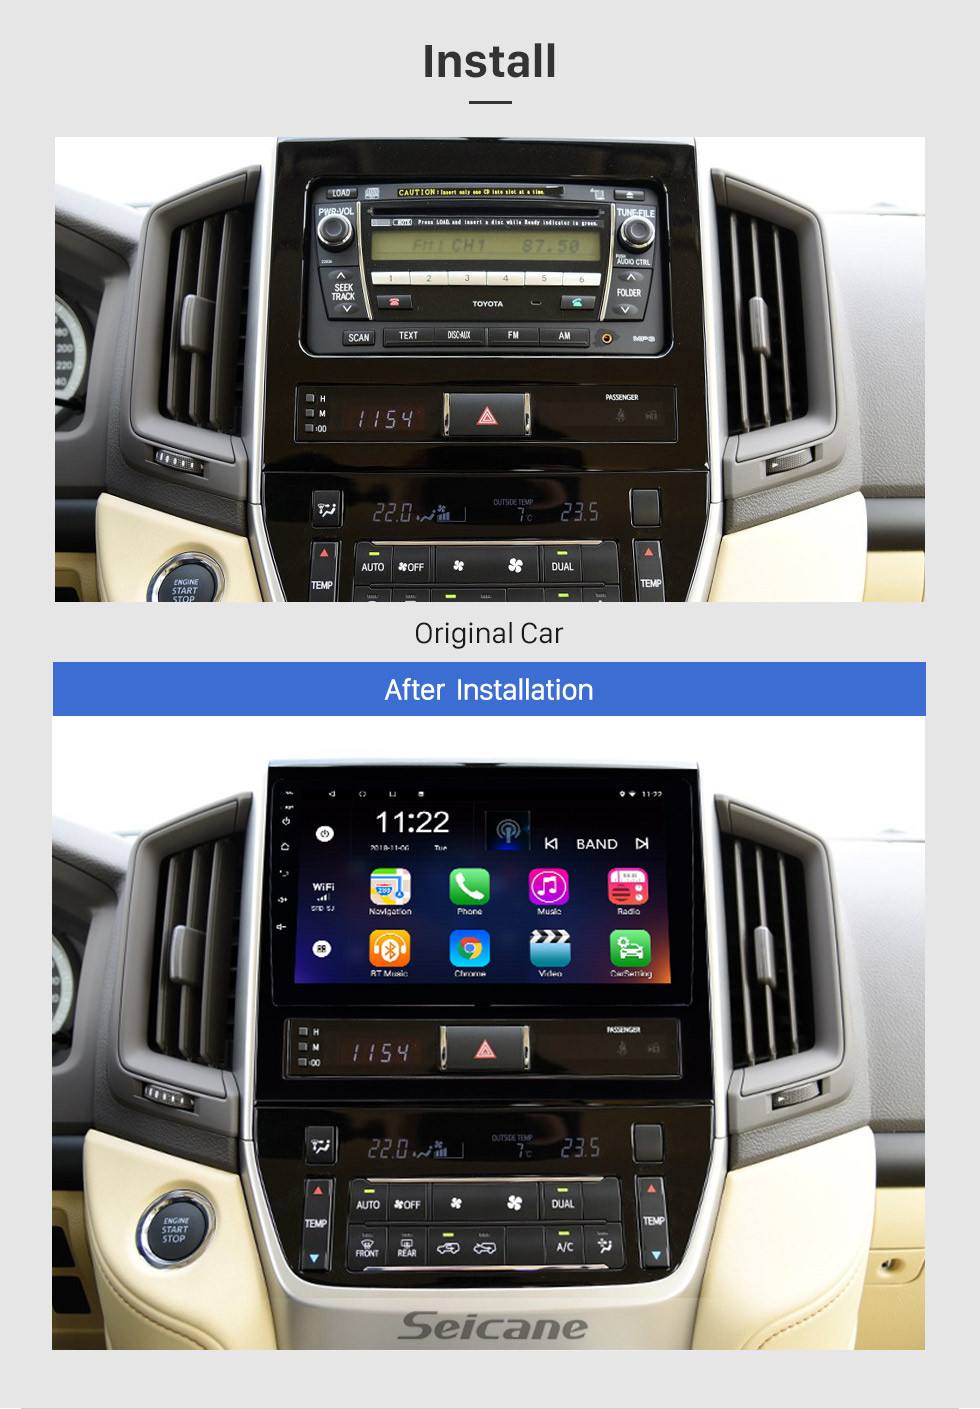 Seicane 9 pulgadas Android 10.0 radio pantalla táctil Sistema de navegación GPS Bluetooth para 2016 Toyota Land Cruiser 200 compatible TPMS DVR OBD II USB SD 3G WiFi Cámara trasera Control del volante HD 1080P Video AUX